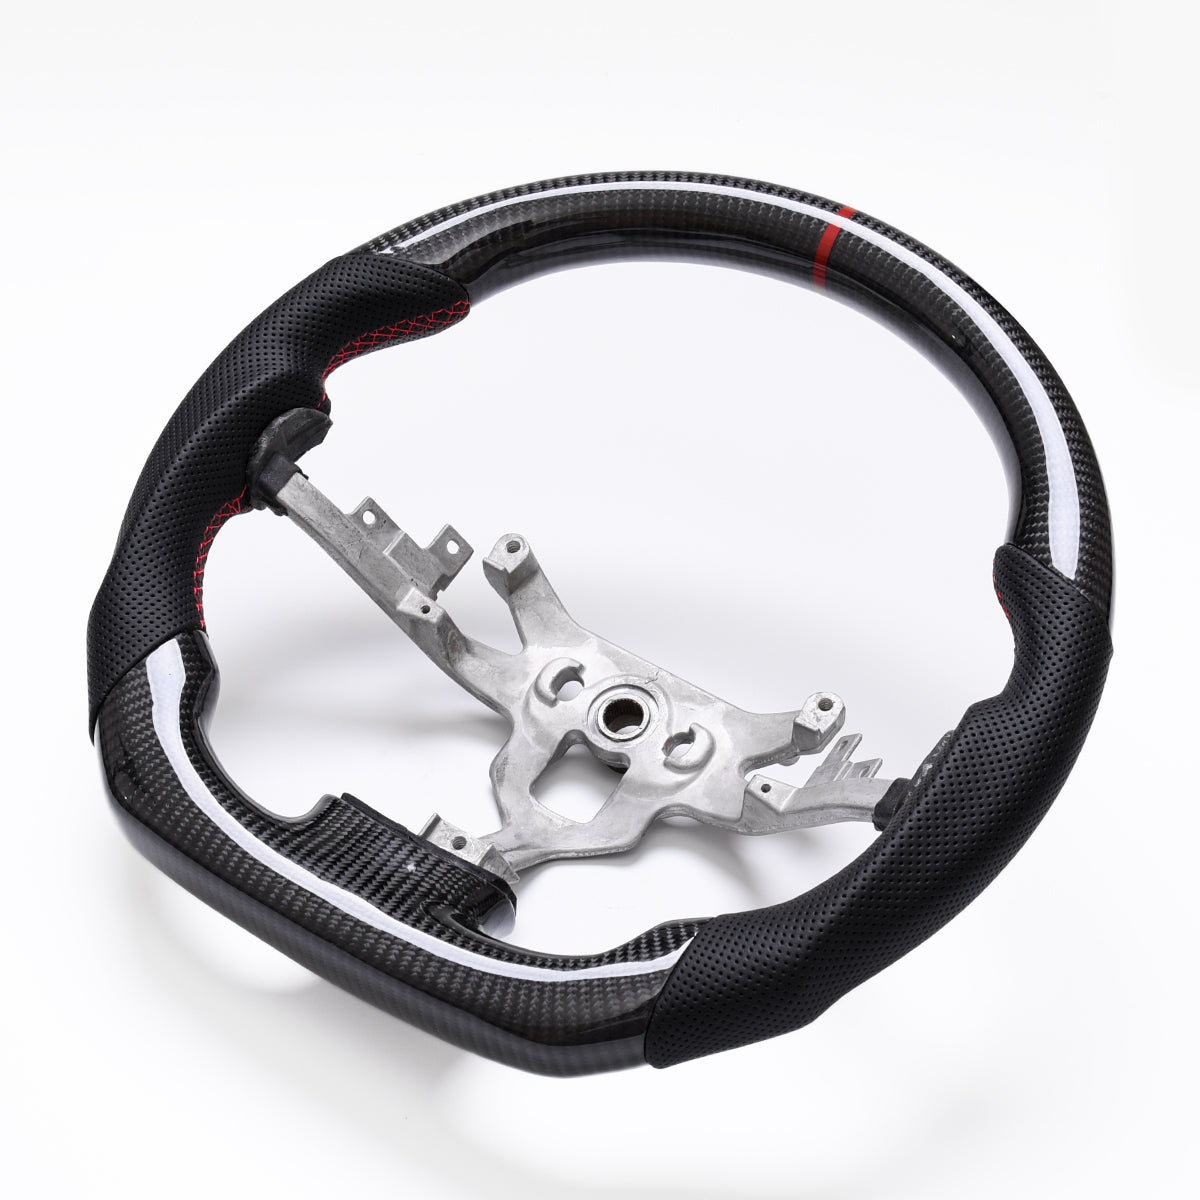 Revolve Carbon Fiber OEM Steering Wheel Chevrolet Corvette C6 Z06 2005-2013 - revolvesteering